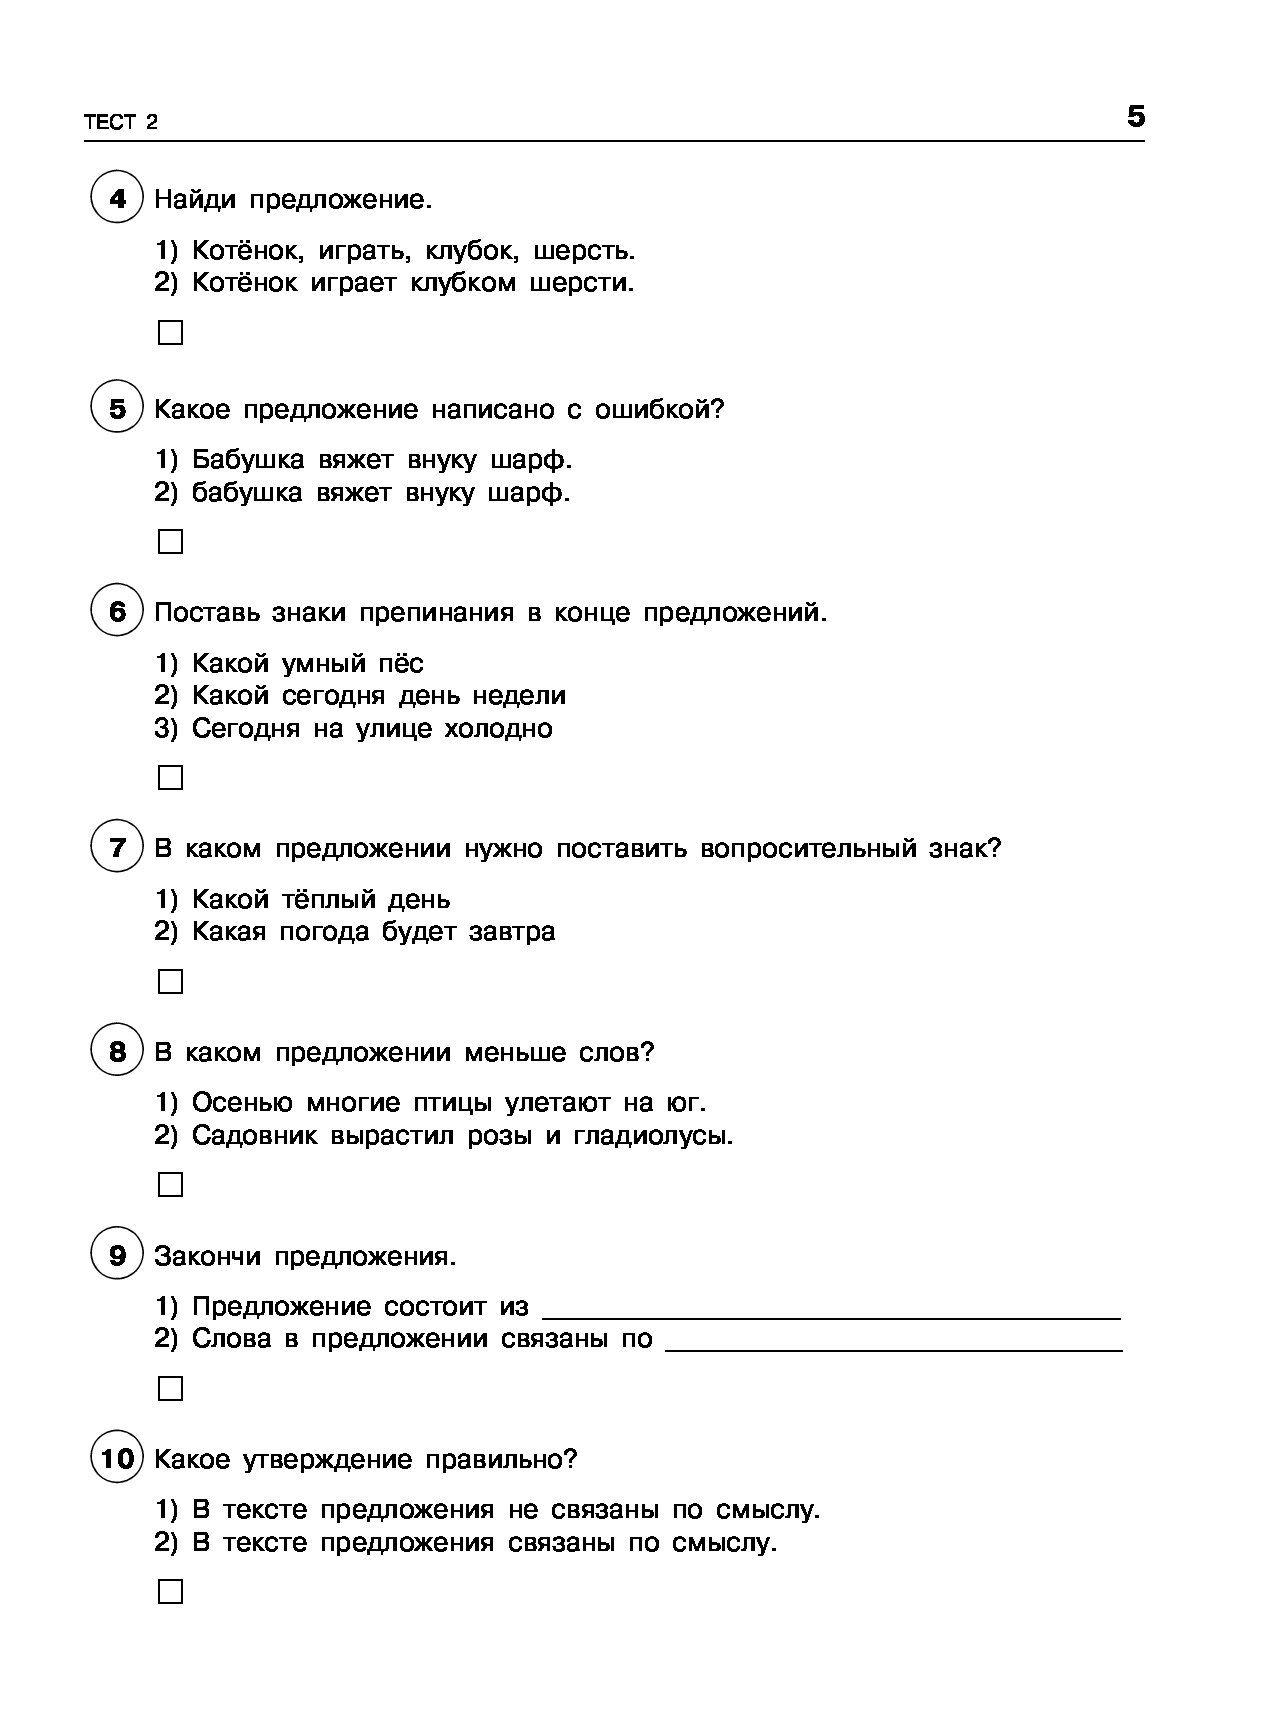 Тест по русскому языку подготовка к впр